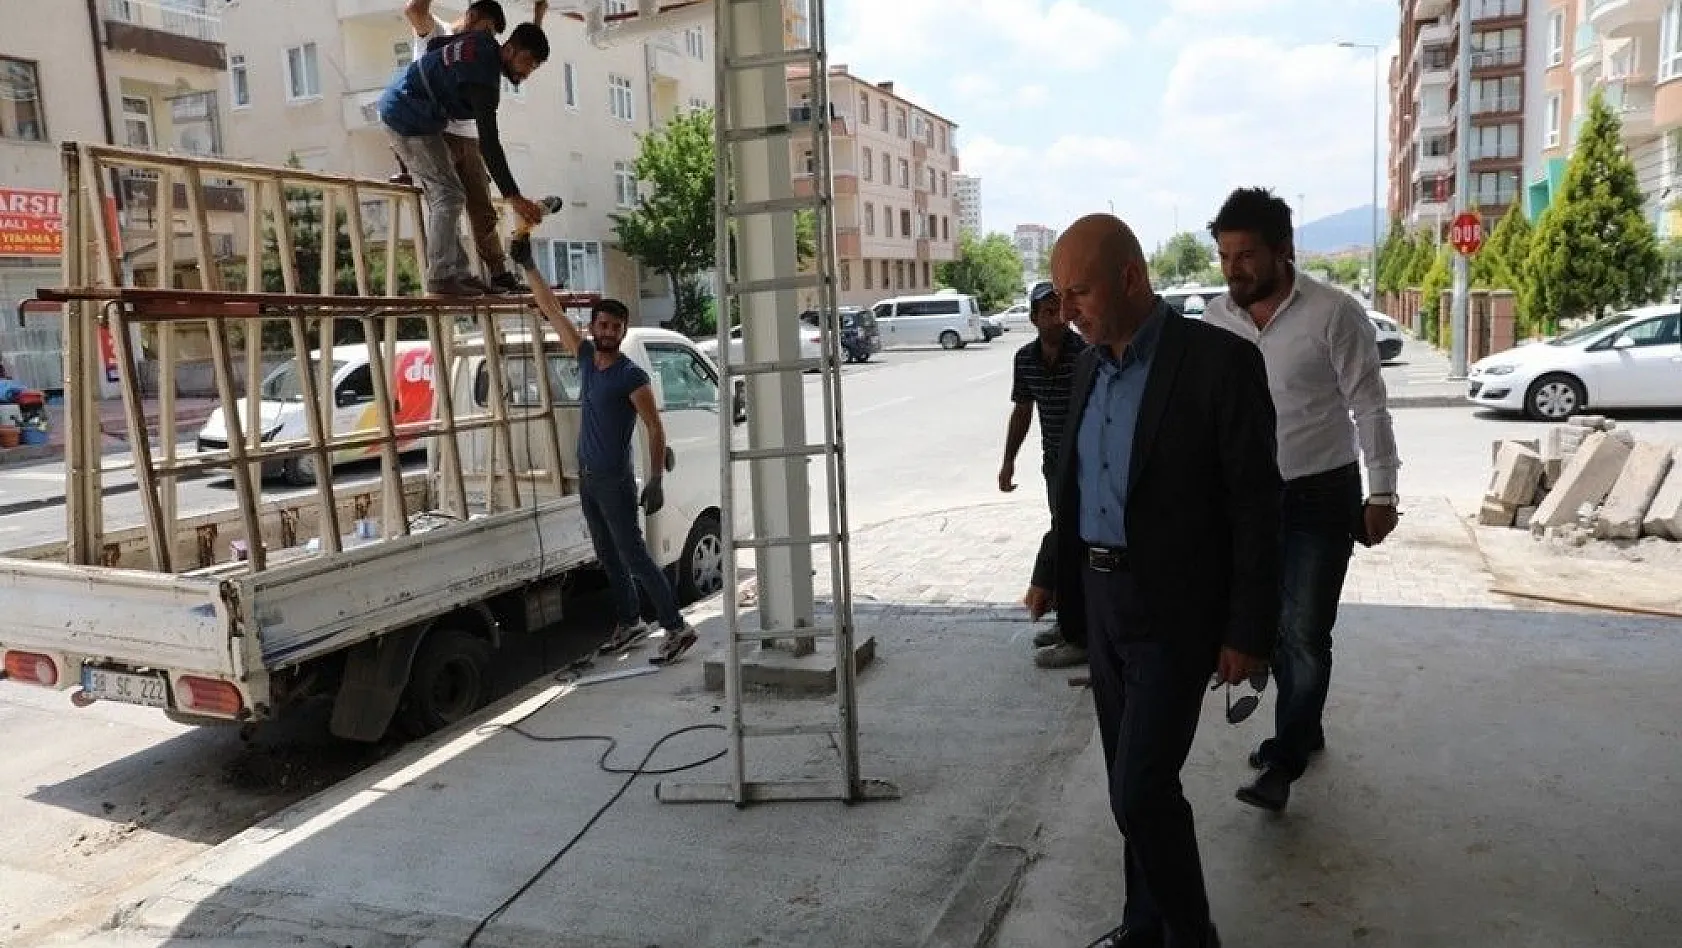 Kocasinan Belediyesi, Erciyesevler Semt Pazarını genişletiyor
